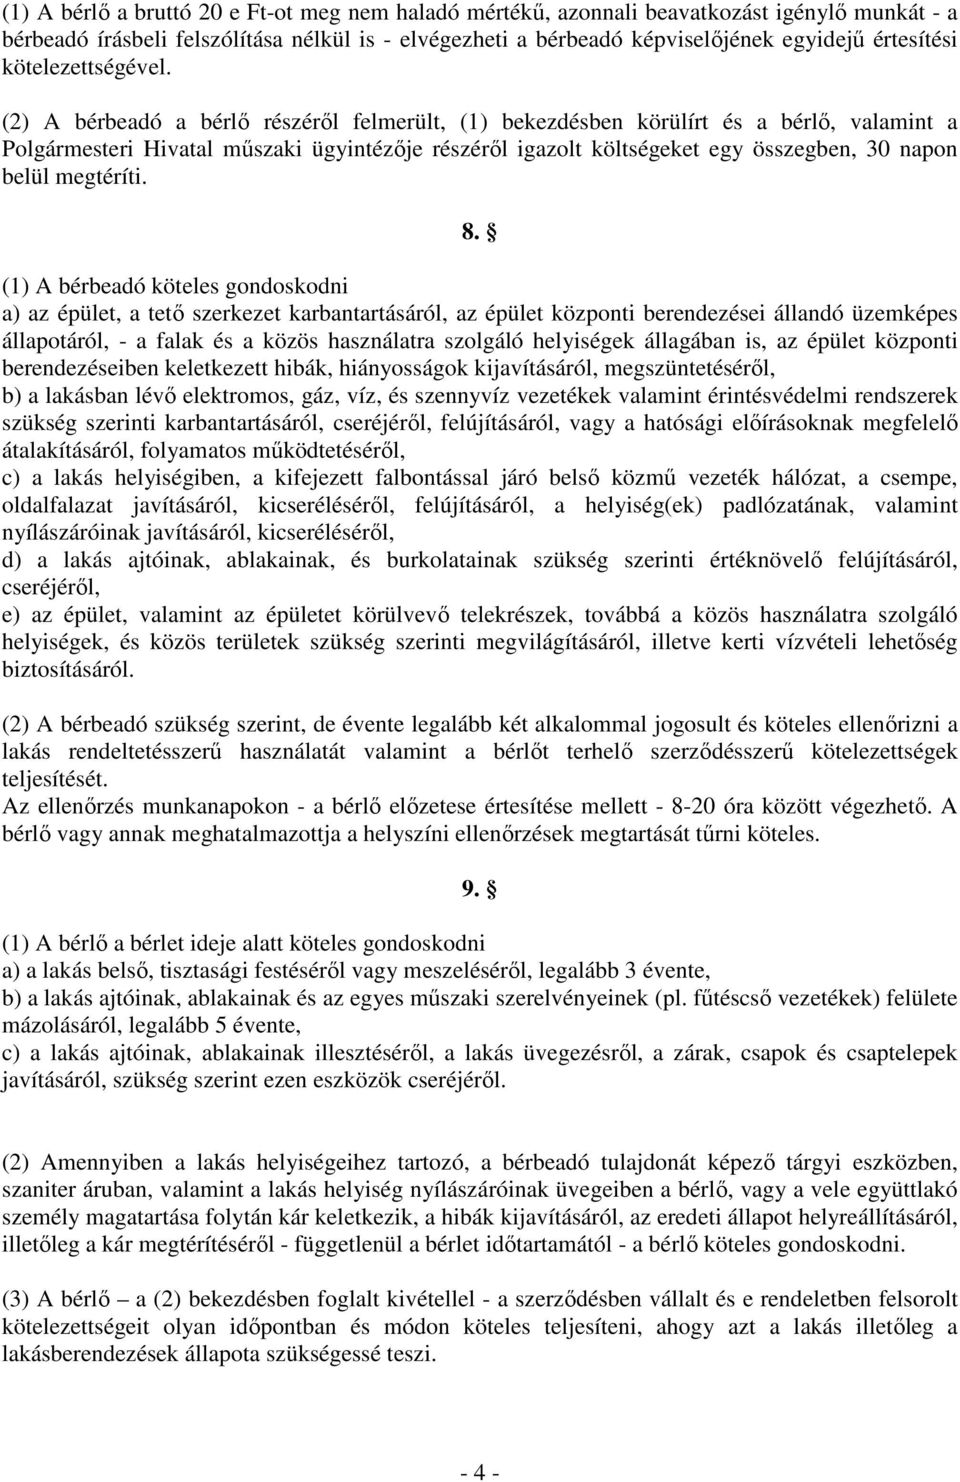 (2) A bérbeadó a bérlı részérıl felmerült, (1) bekezdésben körülírt és a bérlı, valamint a Polgármesteri Hivatal mőszaki ügyintézıje részérıl igazolt költségeket egy összegben, 30 napon belül